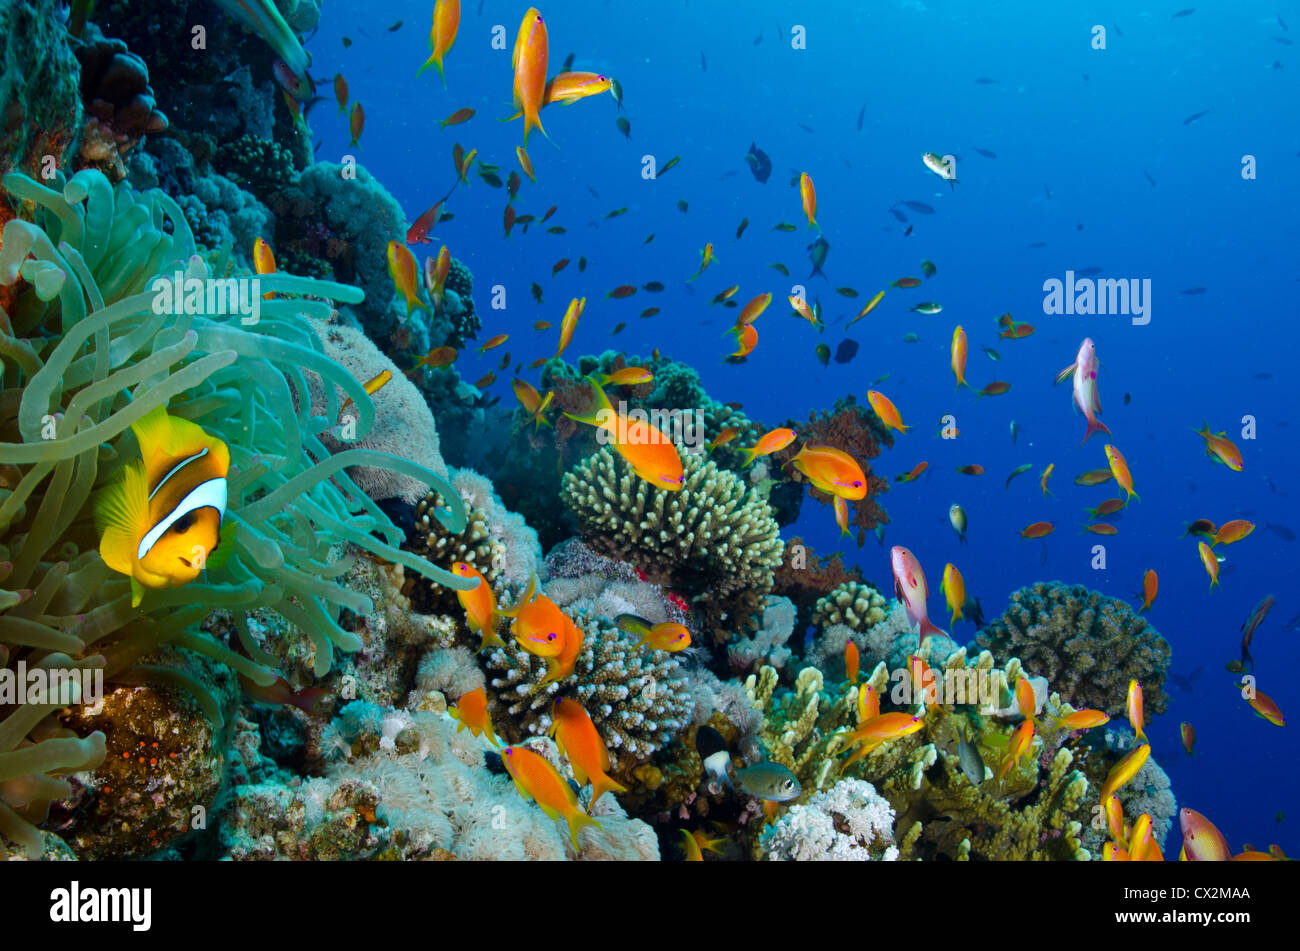 Los arrecifes de coral, Mar Rojo, Egipto, submarinas, arrecifes tropicales, agua azul, submarinismo, el océano, el mar, los peces, la vida marina, agua clara. Foto de stock